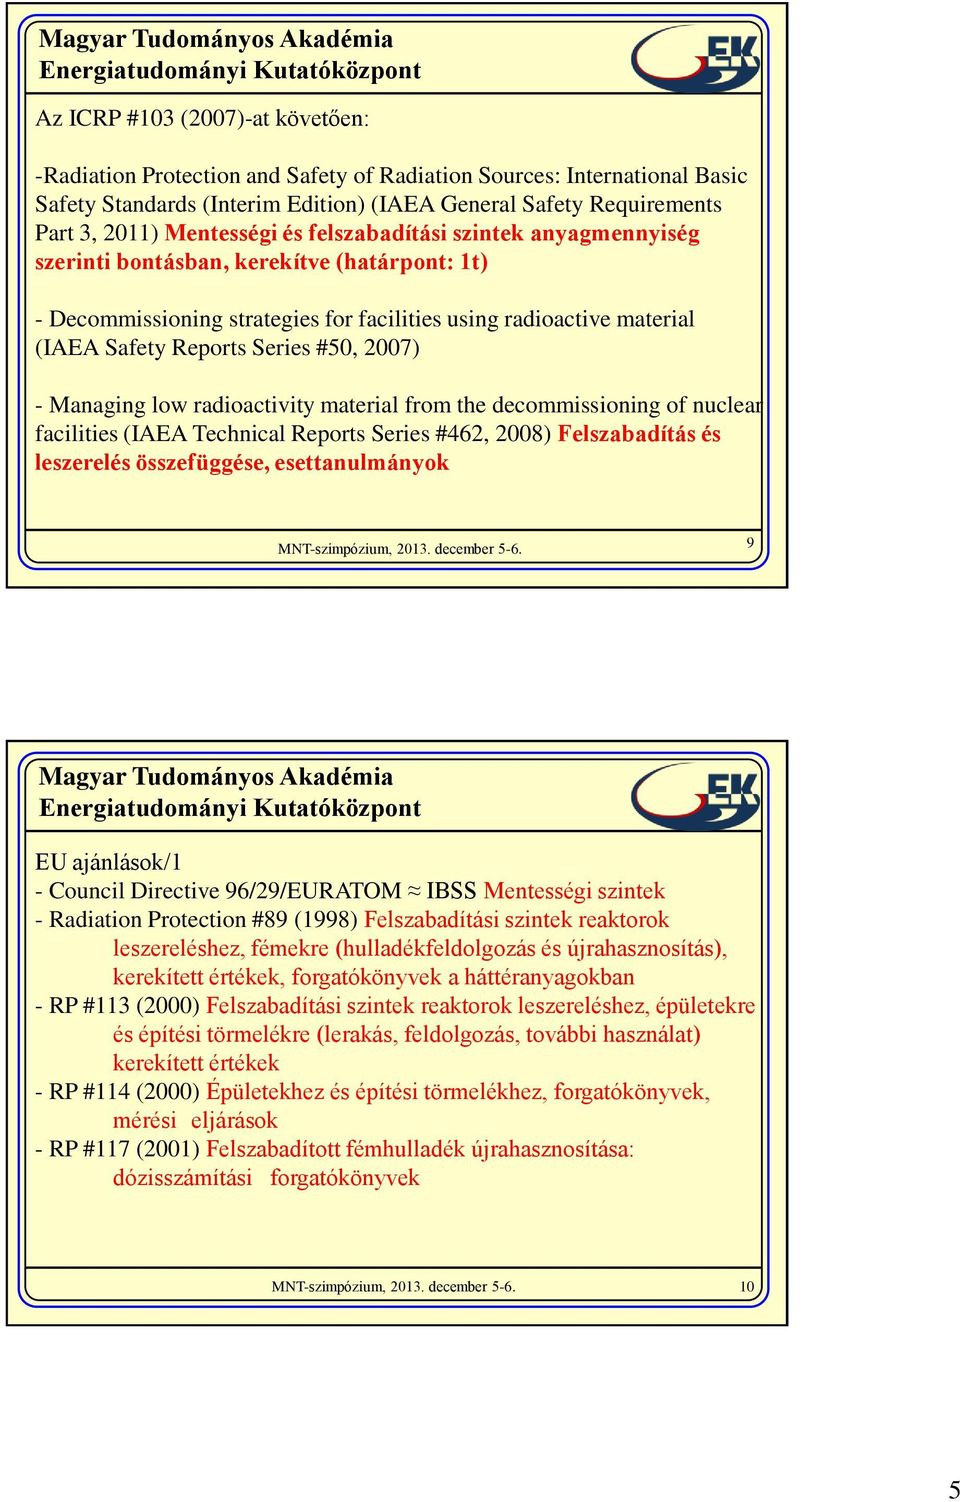 #50, 2007) - Managing low radioactivity material from the decommissioning of nuclear facilities (IAEA Technical Reports Series #462, 2008) Felszabadítás és leszerelés összefüggése, esettanulmányok 9